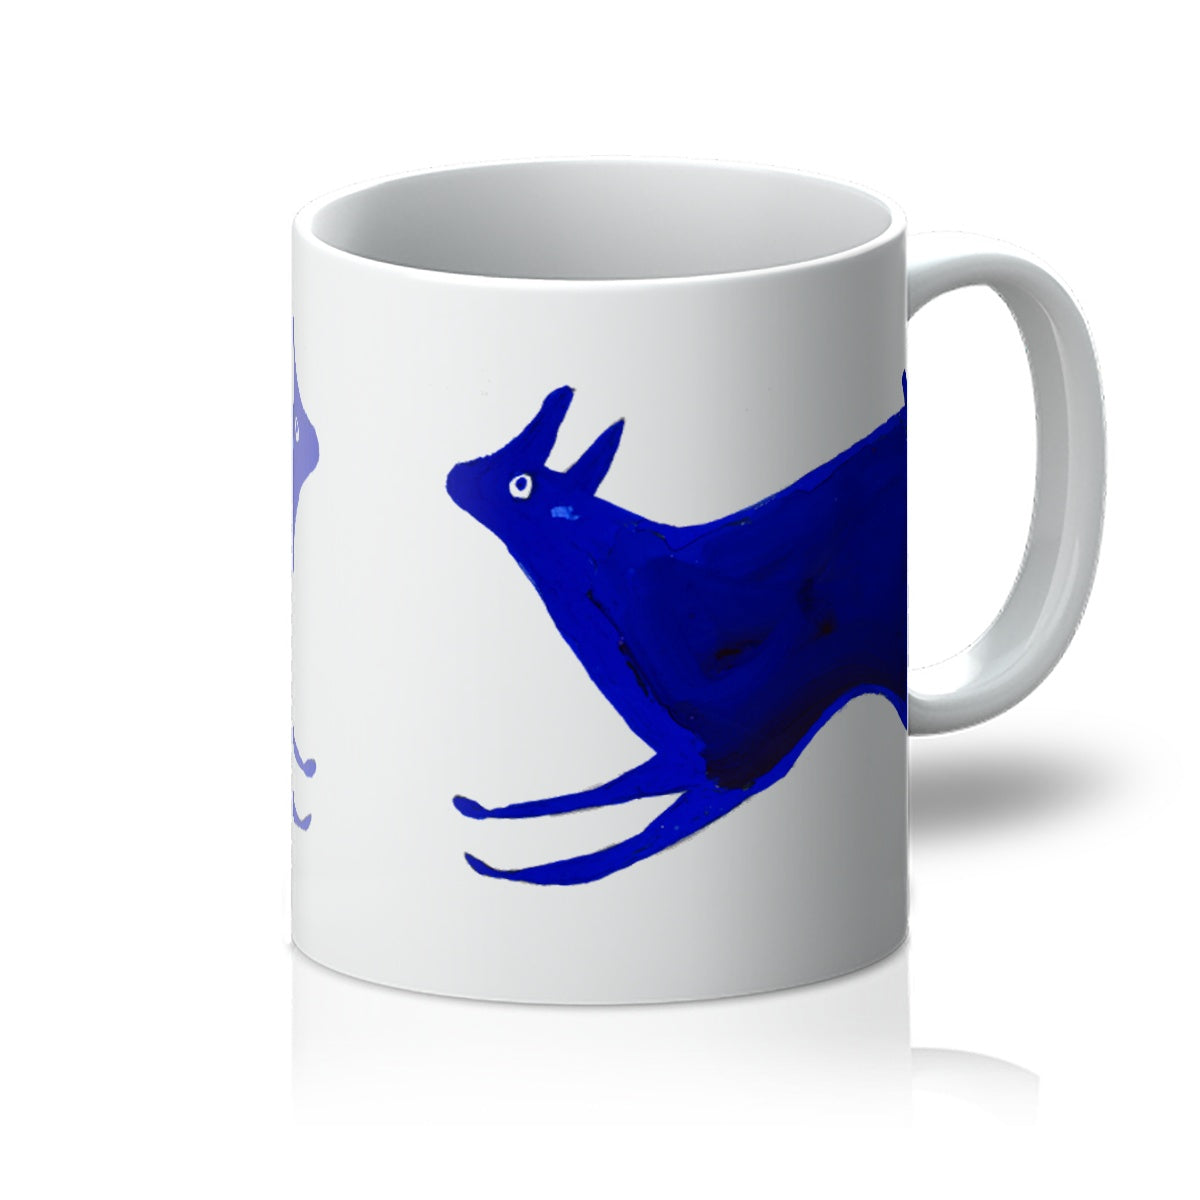 Blue Rabbit Running by Bill Traylor c.1941 - Mug